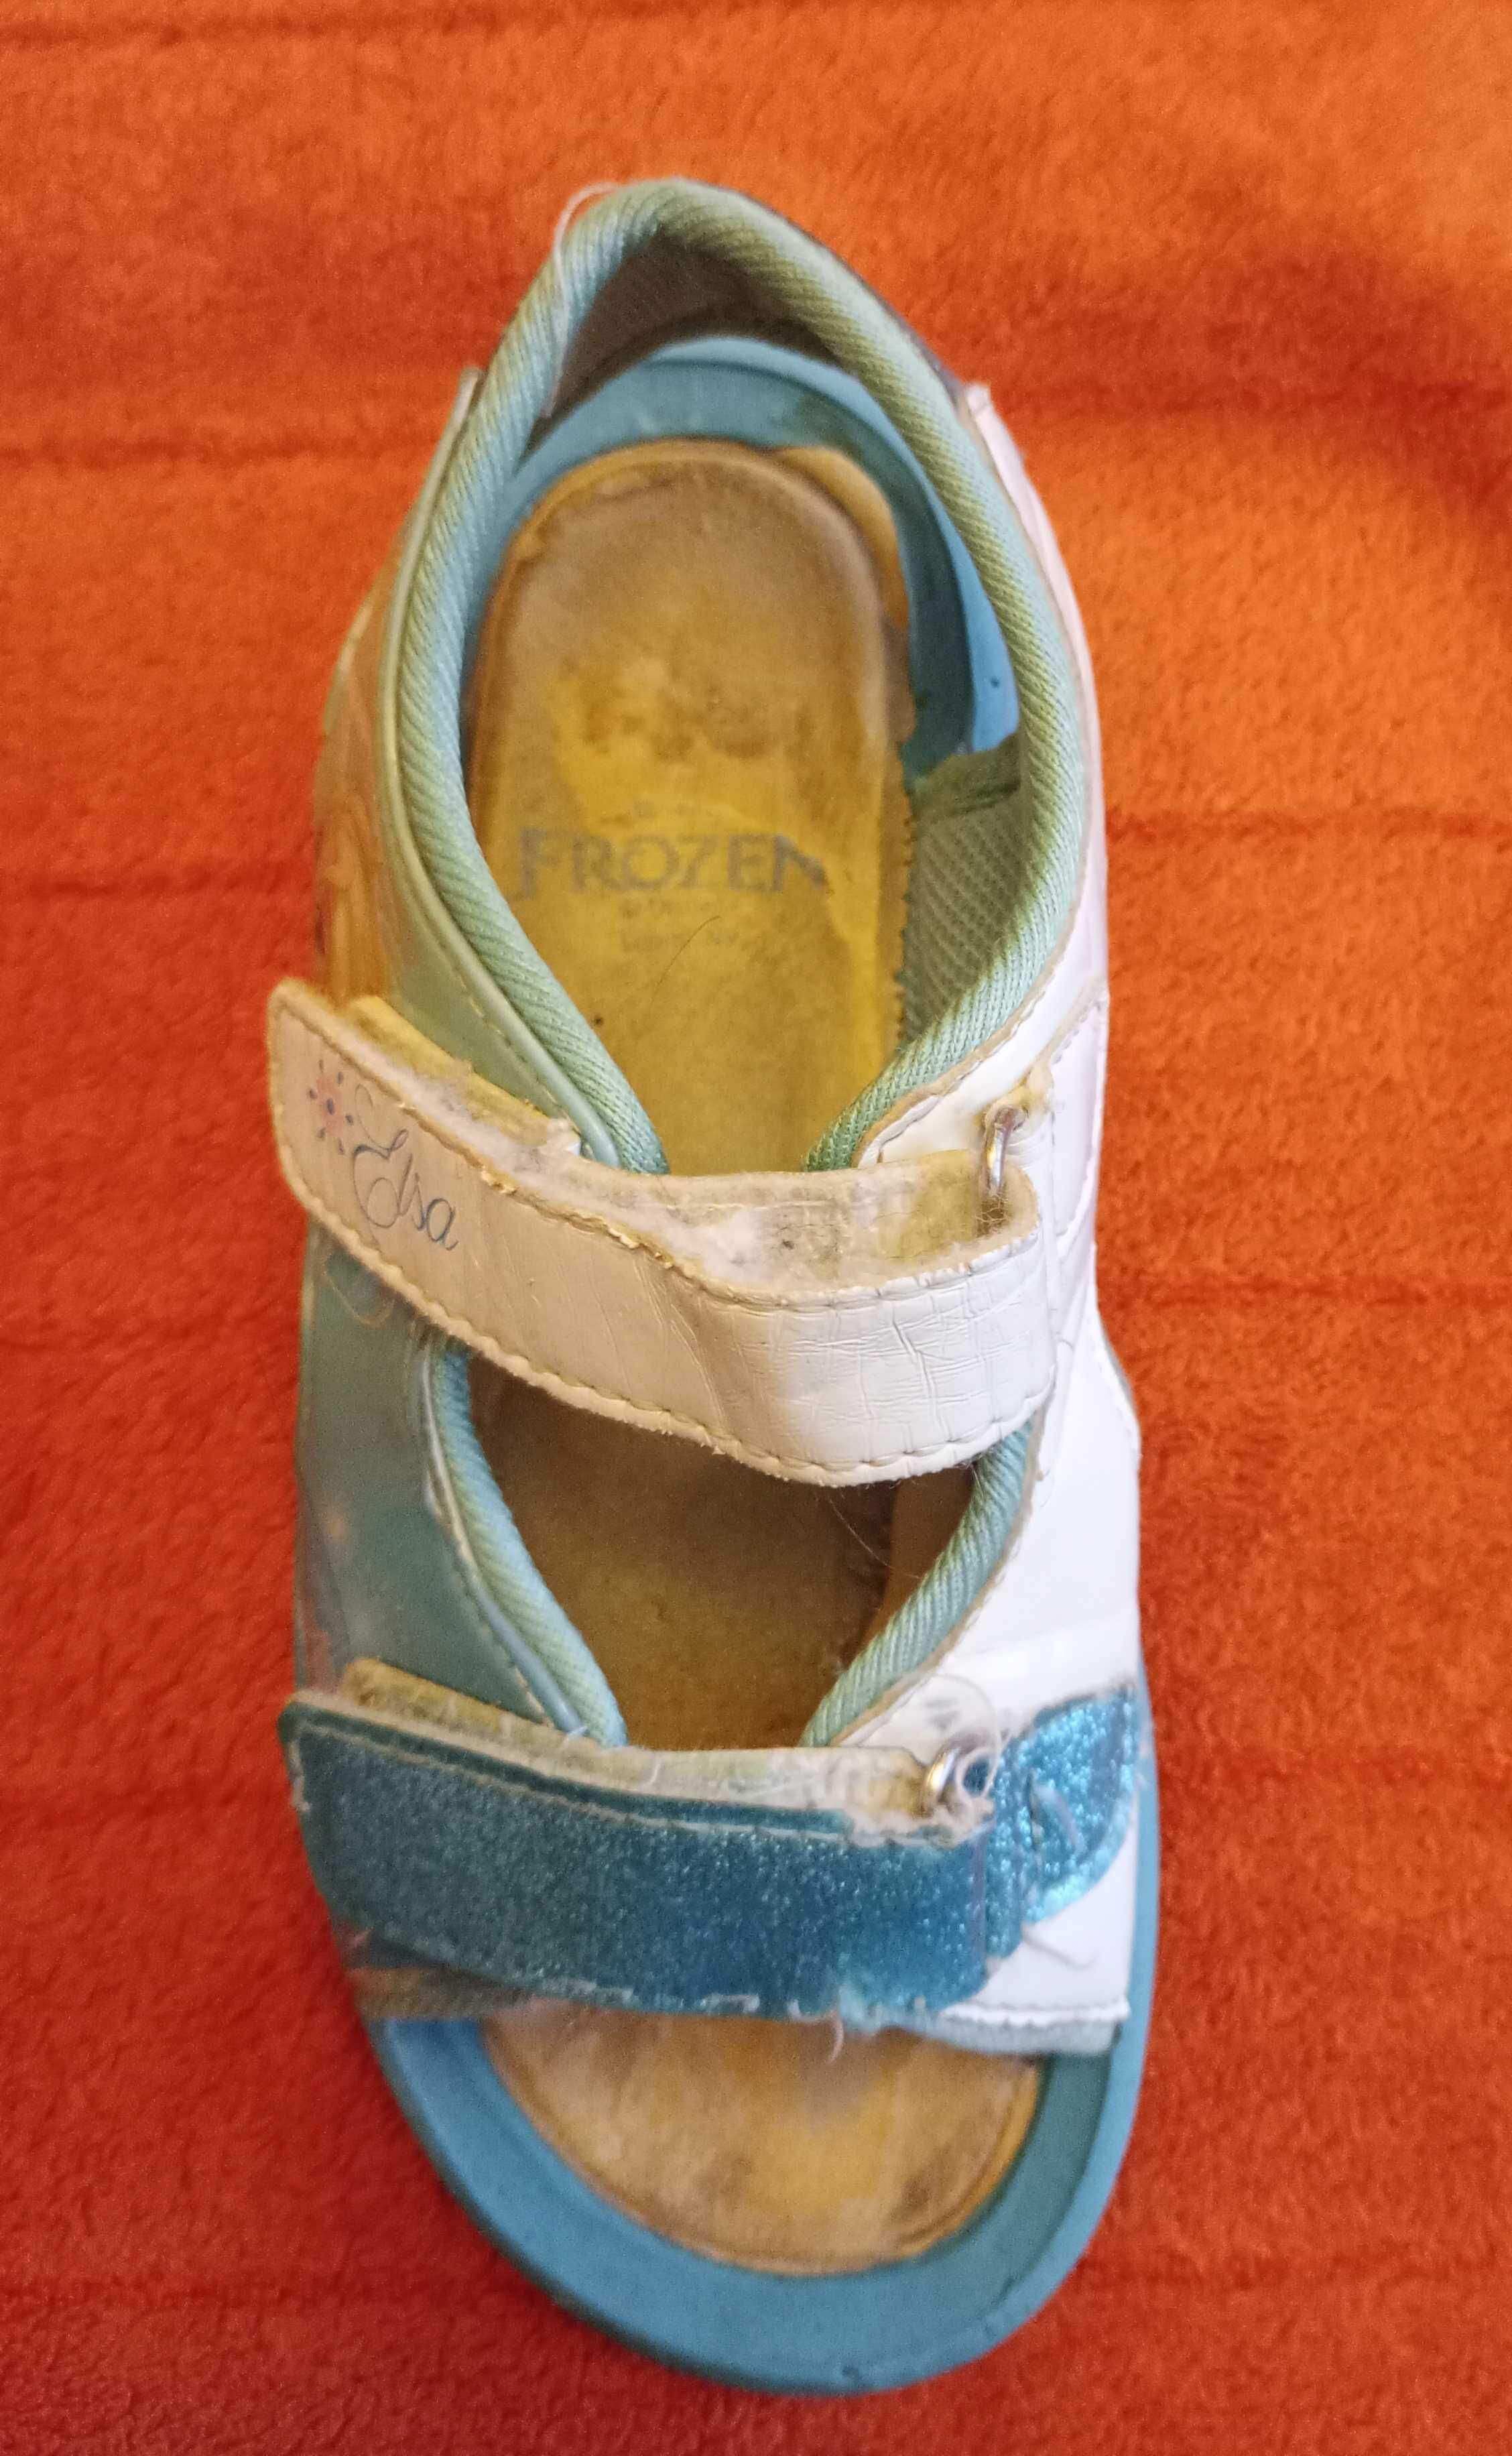 Elsa elza frozen, sandały dla dziecka, buty dla dziewczynki, wkł 17,5